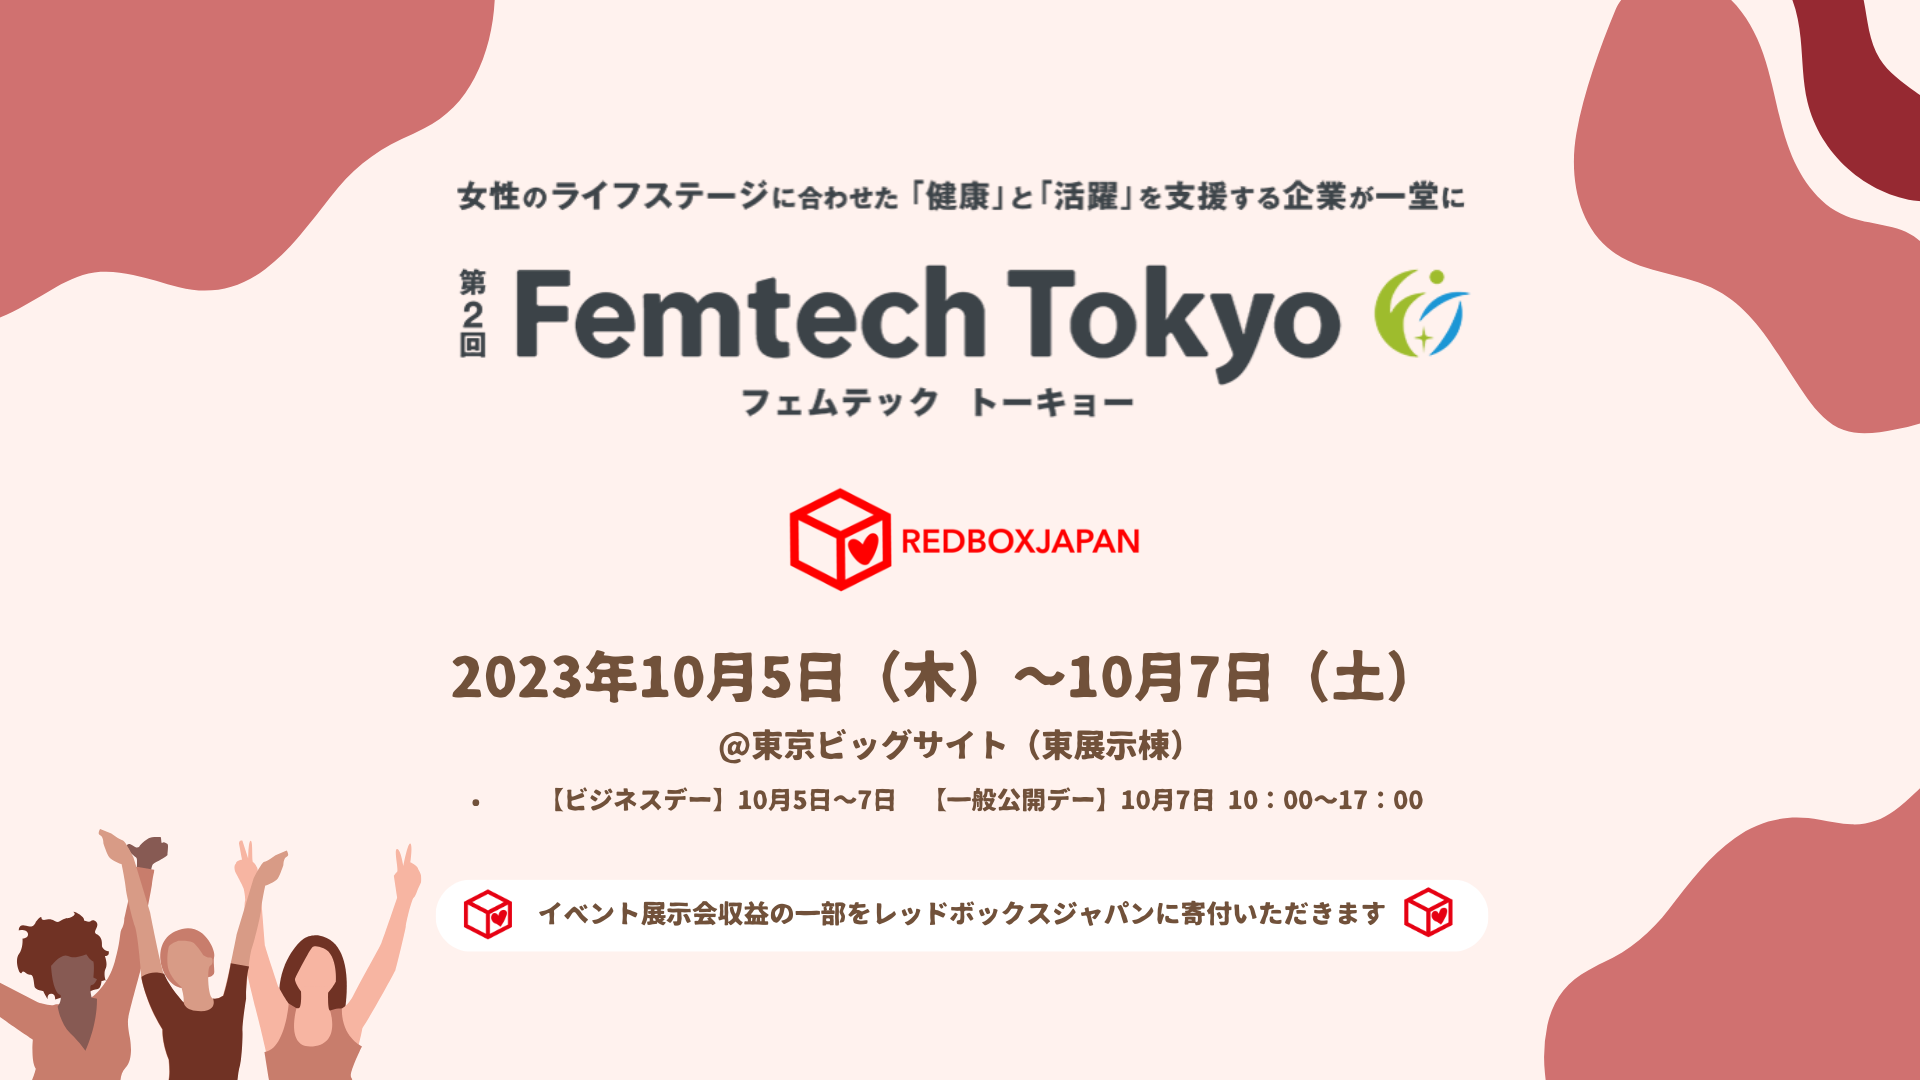 フェムテックイベント「Femtech Tokyo」展示会収益金の一部をレッドボックスジャパンに寄付いただきます